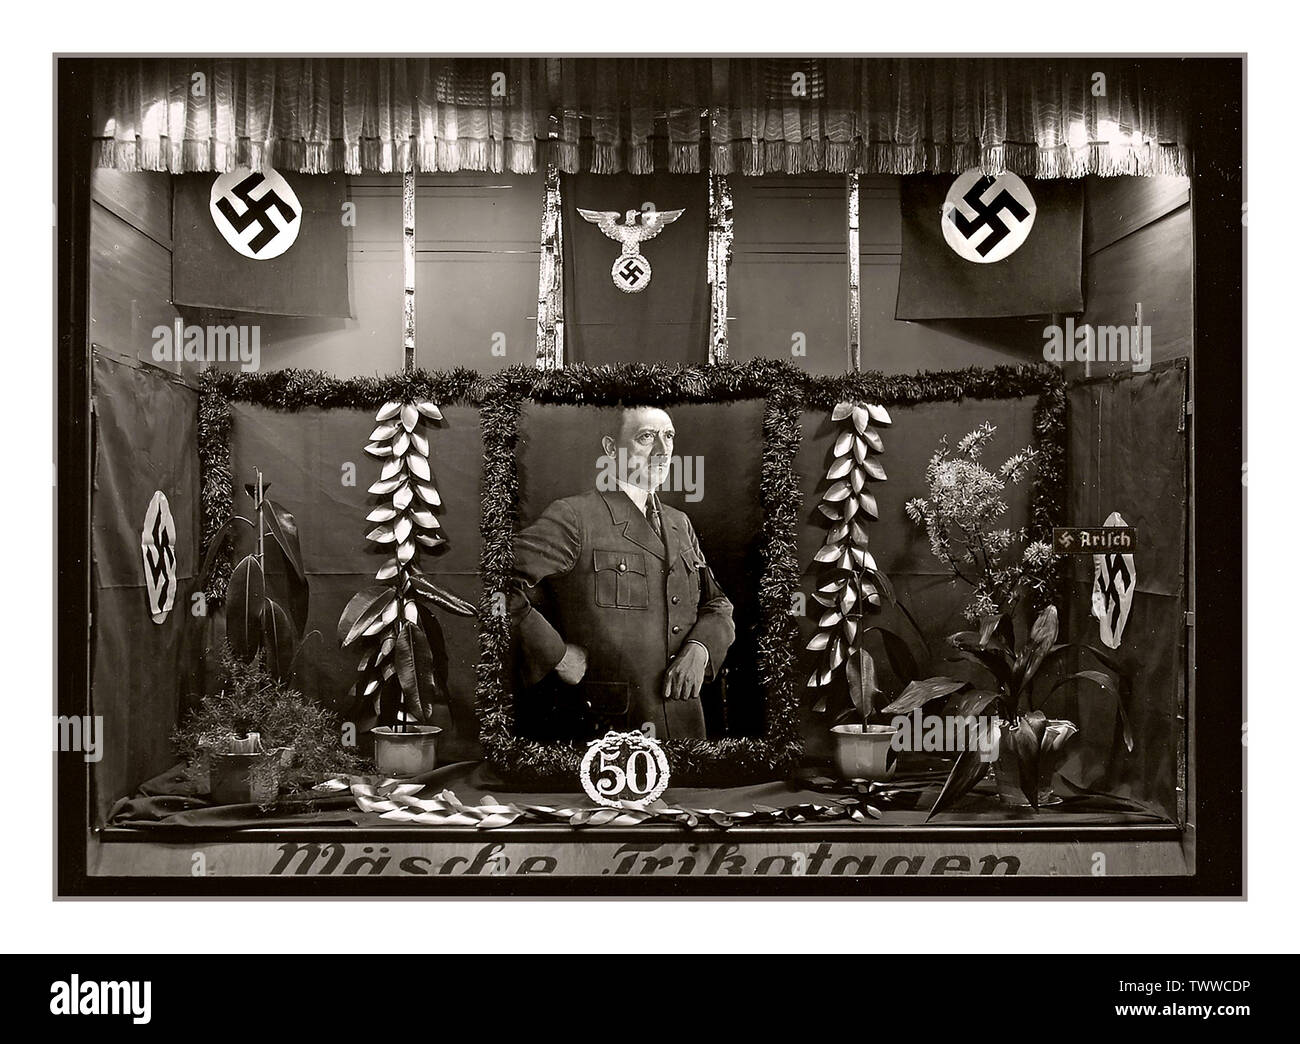 Vintage 1939 Adolf Hitler shop window display célébrant son 50e anniversaire le 18 avril 1939, le gouvernement de l'Allemagne a déclaré que leur Führer Adolf Hitler's anniversaire (20 avril) était d'être une fête nationale. Festivités ont eu lieu dans toutes les municipalités dans tout le pays. Banque D'Images